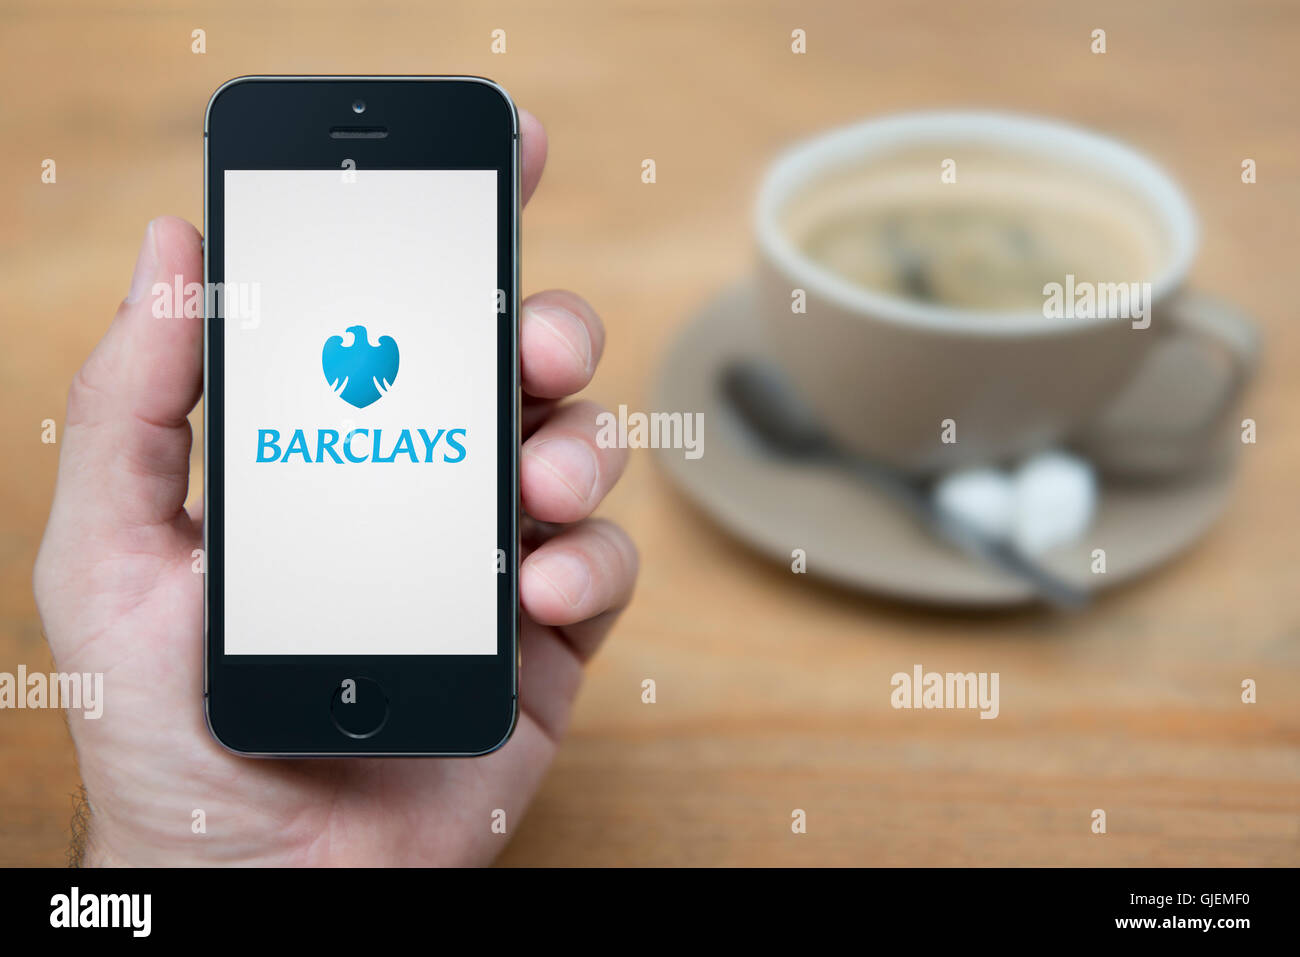 Un homme se penche sur son iPhone qui affiche le logo de la banque Barclays, tandis qu'assis avec une tasse de café (usage éditorial uniquement). Banque D'Images